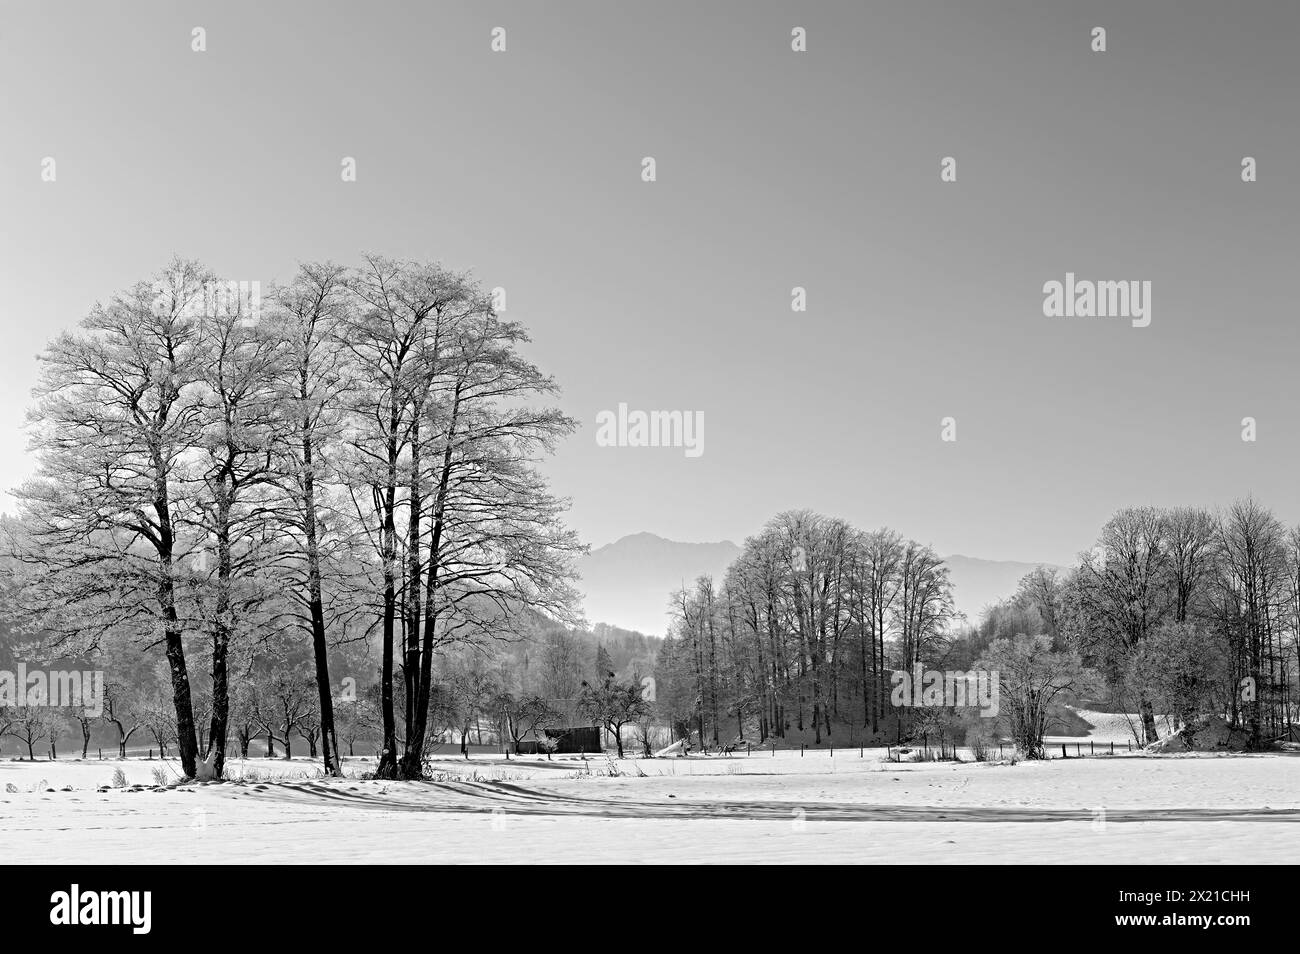 Laubbäume im Winter mit Raureif und bayerische Alpen im Hintergrund, Bad Heilbrunn, Oberbayern, Bayern, Deutschland Stockfoto